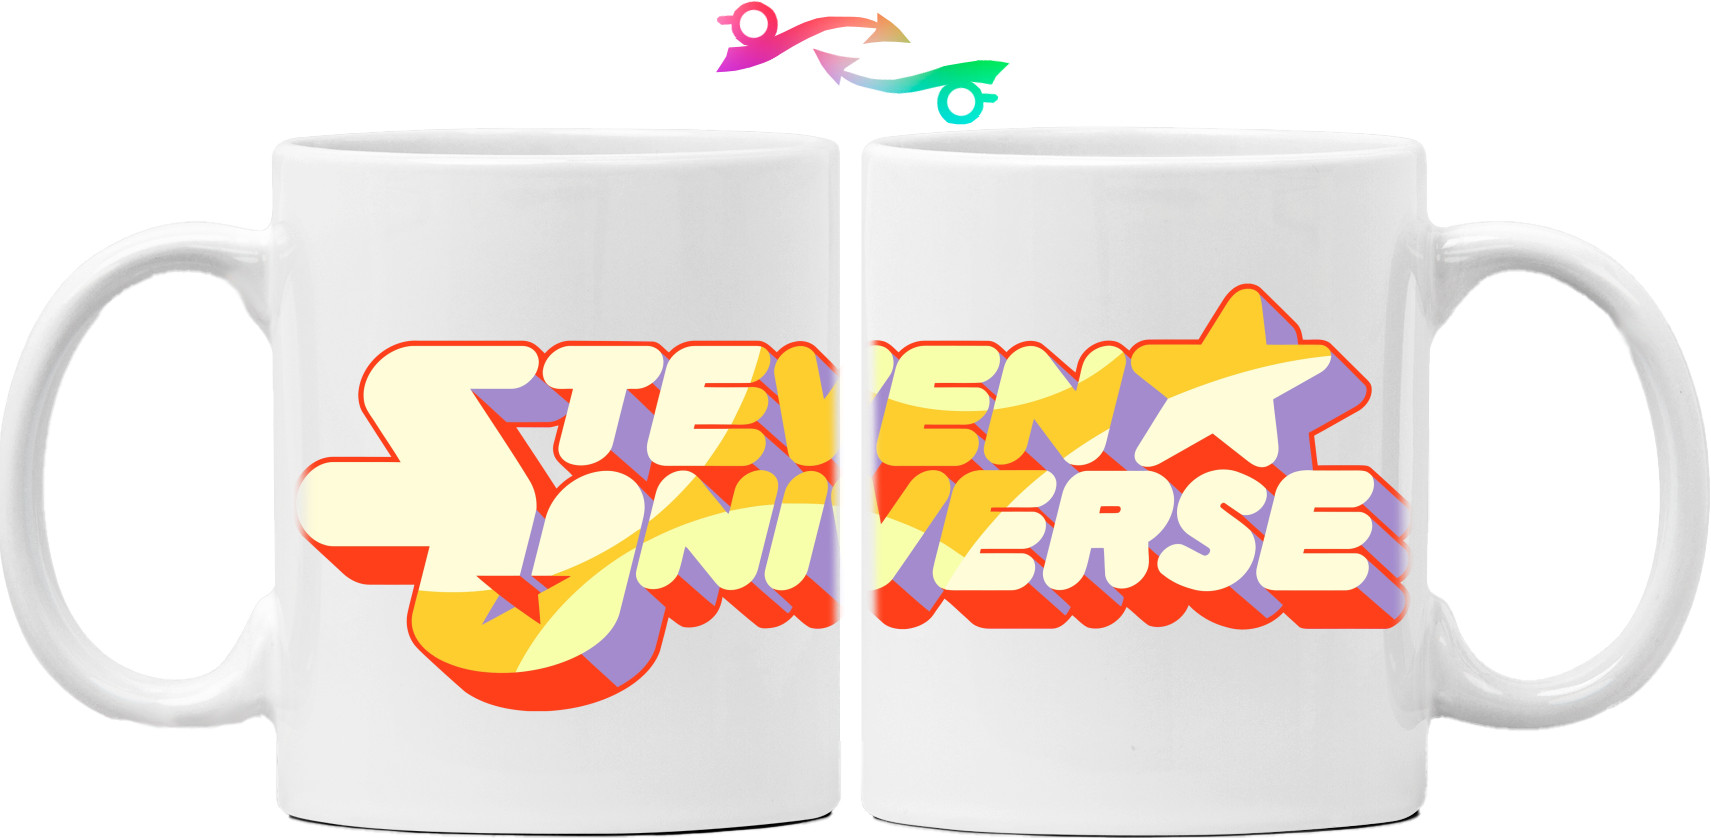 Steven Universe / Вселенная Стивена - Кружка - Стівен Юніверс - Mfest